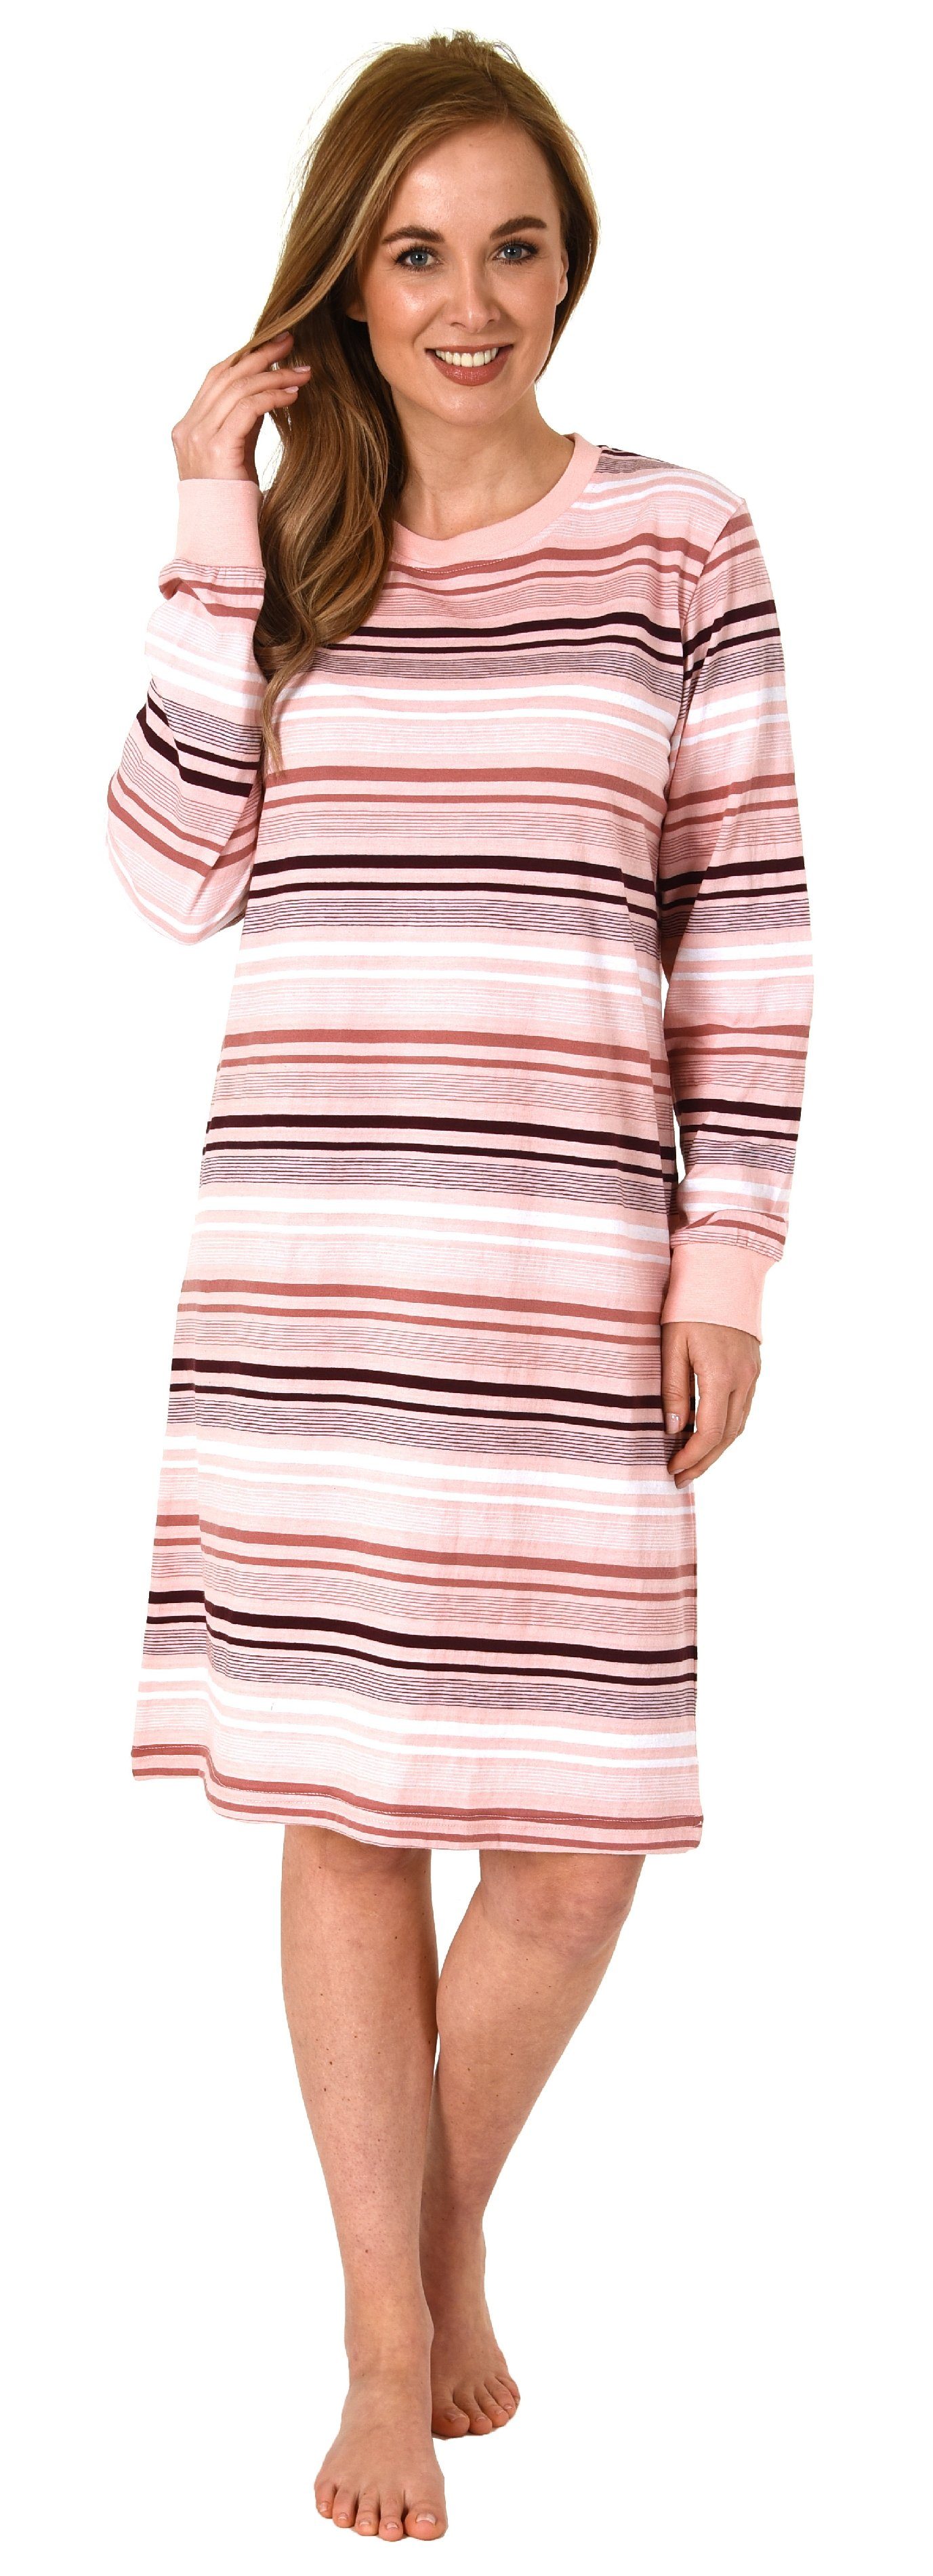 Normann Nachthemd »Damen Nachthemd langarm mit Bündchen in Streifenoptik -  auch in Übergrössen - 212 213 235« online kaufen | OTTO